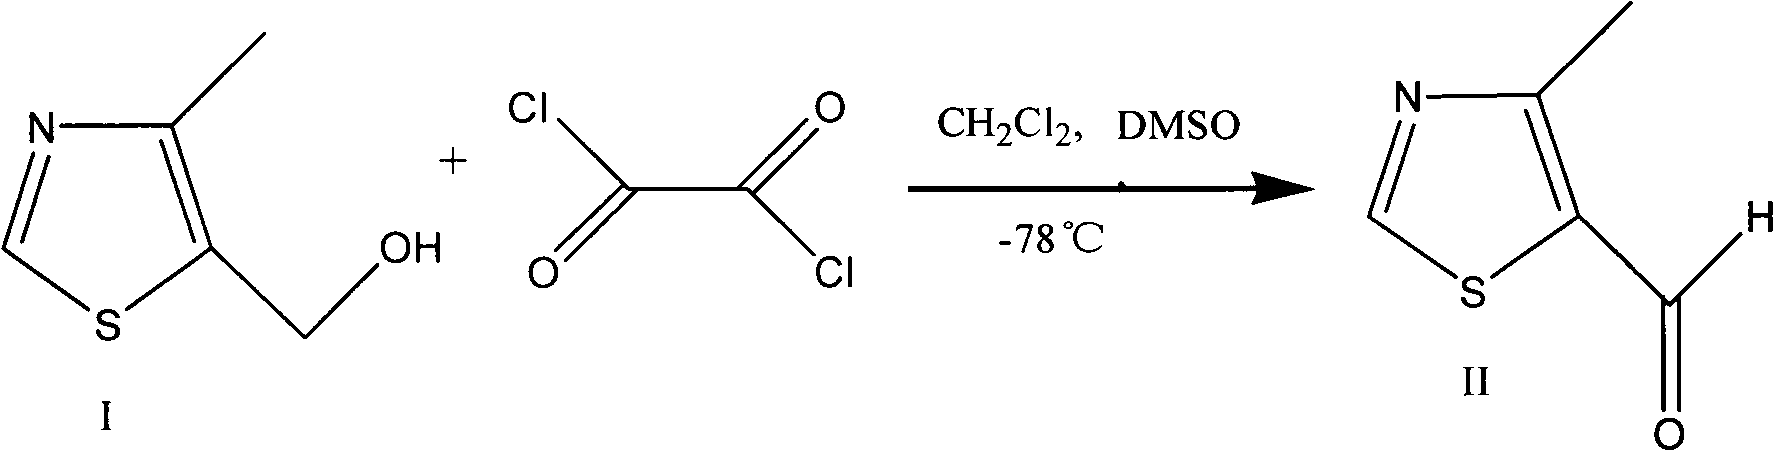 Preparation method of 4-alkyl-5-formoxyl thiazole or 5-formoxyl thiazole